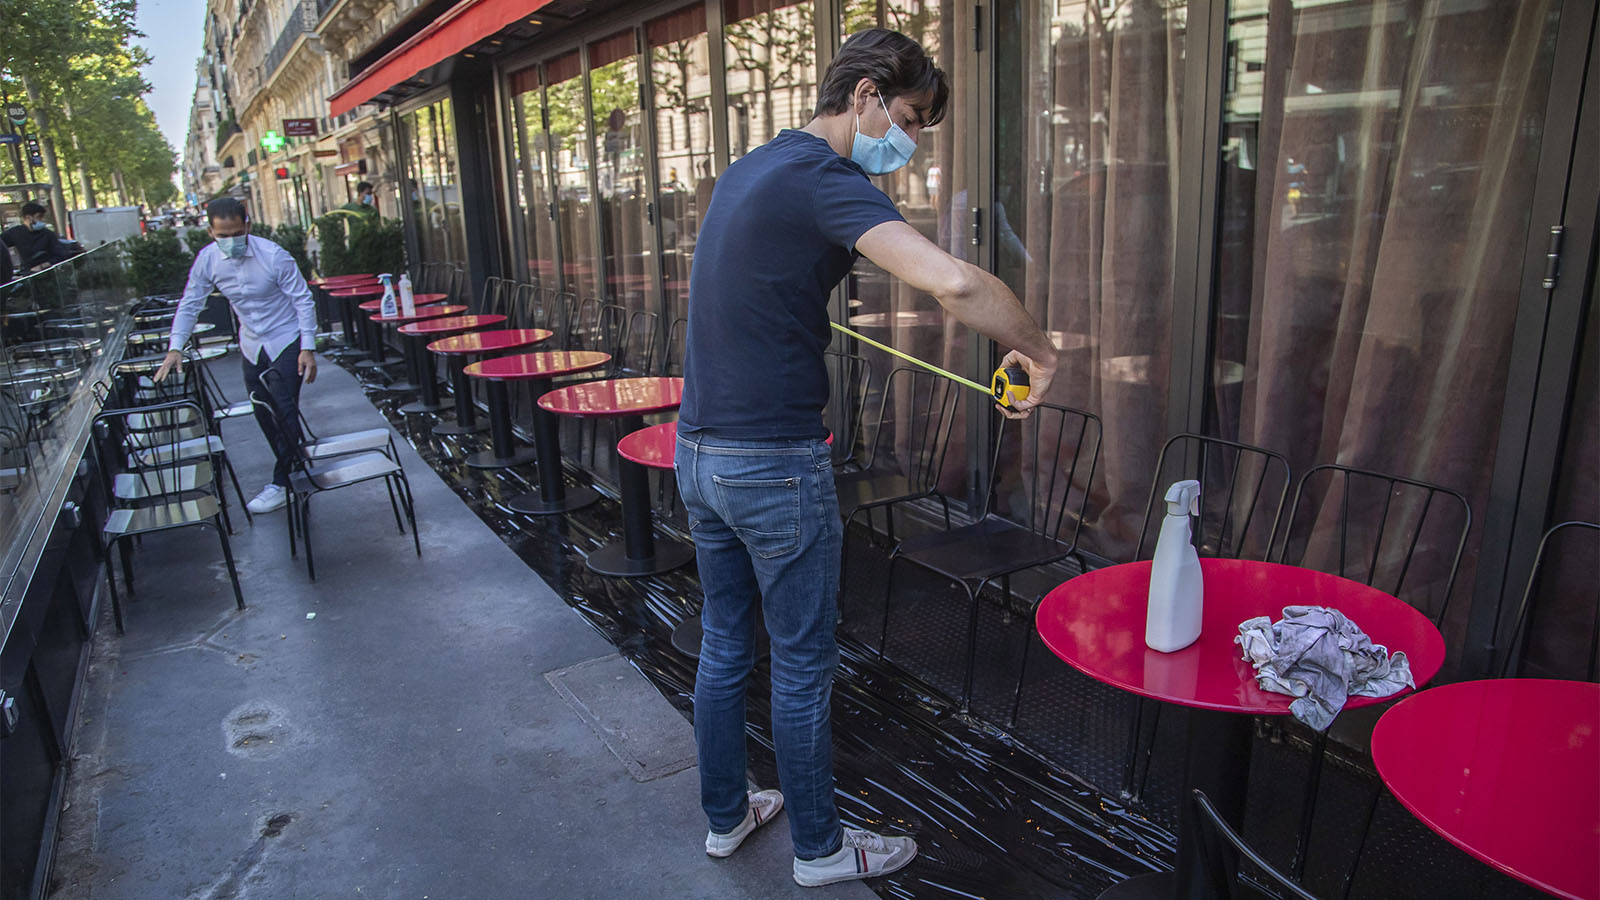 פייר-אנטוני בורו מודד את המרחקים בין השולחנות בחצר מסעדה בפריז כחלק מההכנות לפתיחה המחודשת (AP Photo/Michel Euler)